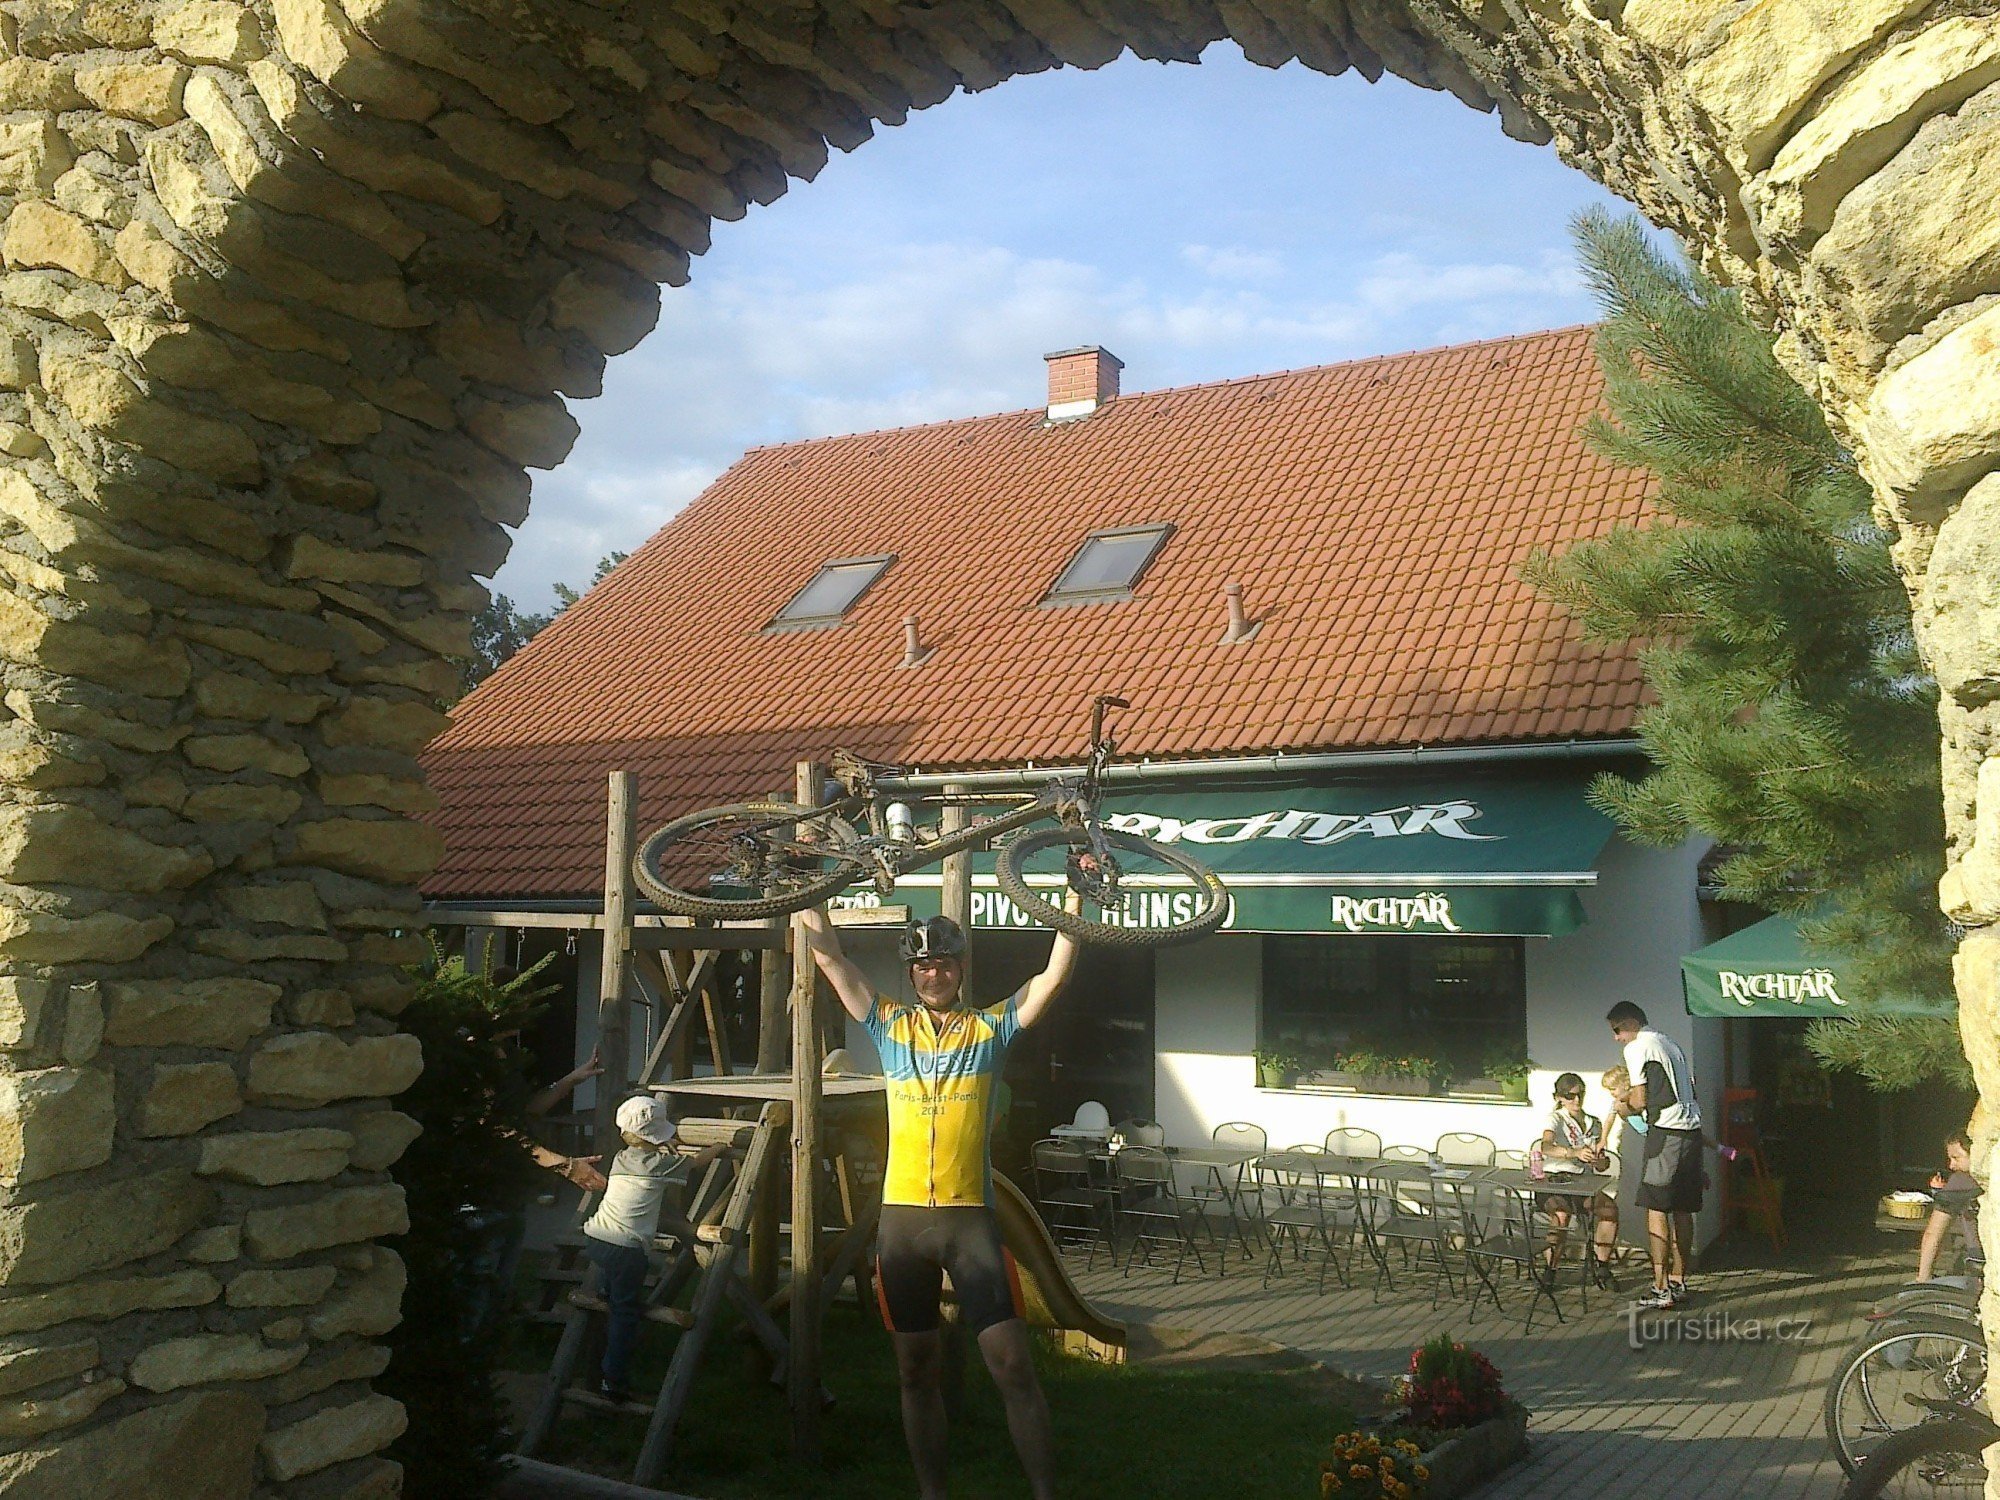 Pelestrovská pub - оазис для велосипедистів і лижників